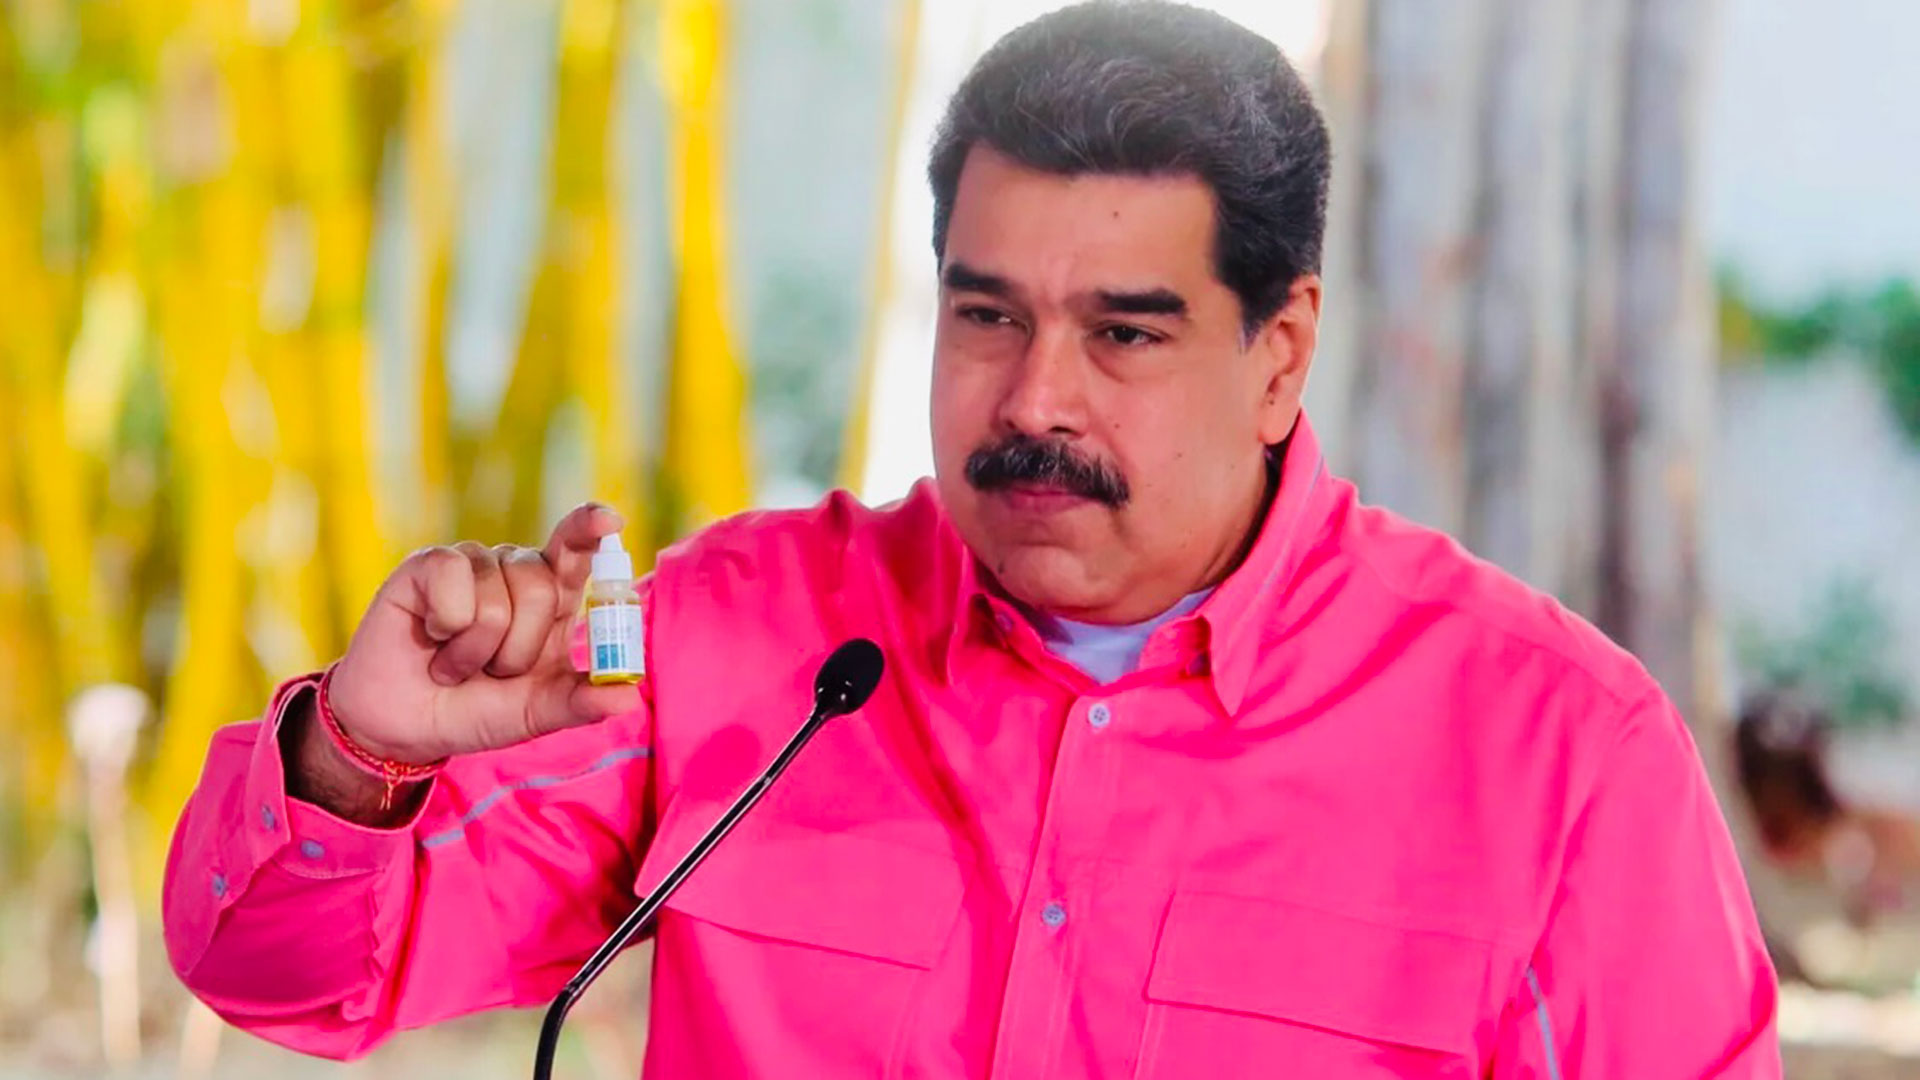 La historia oculta detrás de las “gotas milagrosas” que Nicolás Maduro anunció como cura contra el COVID